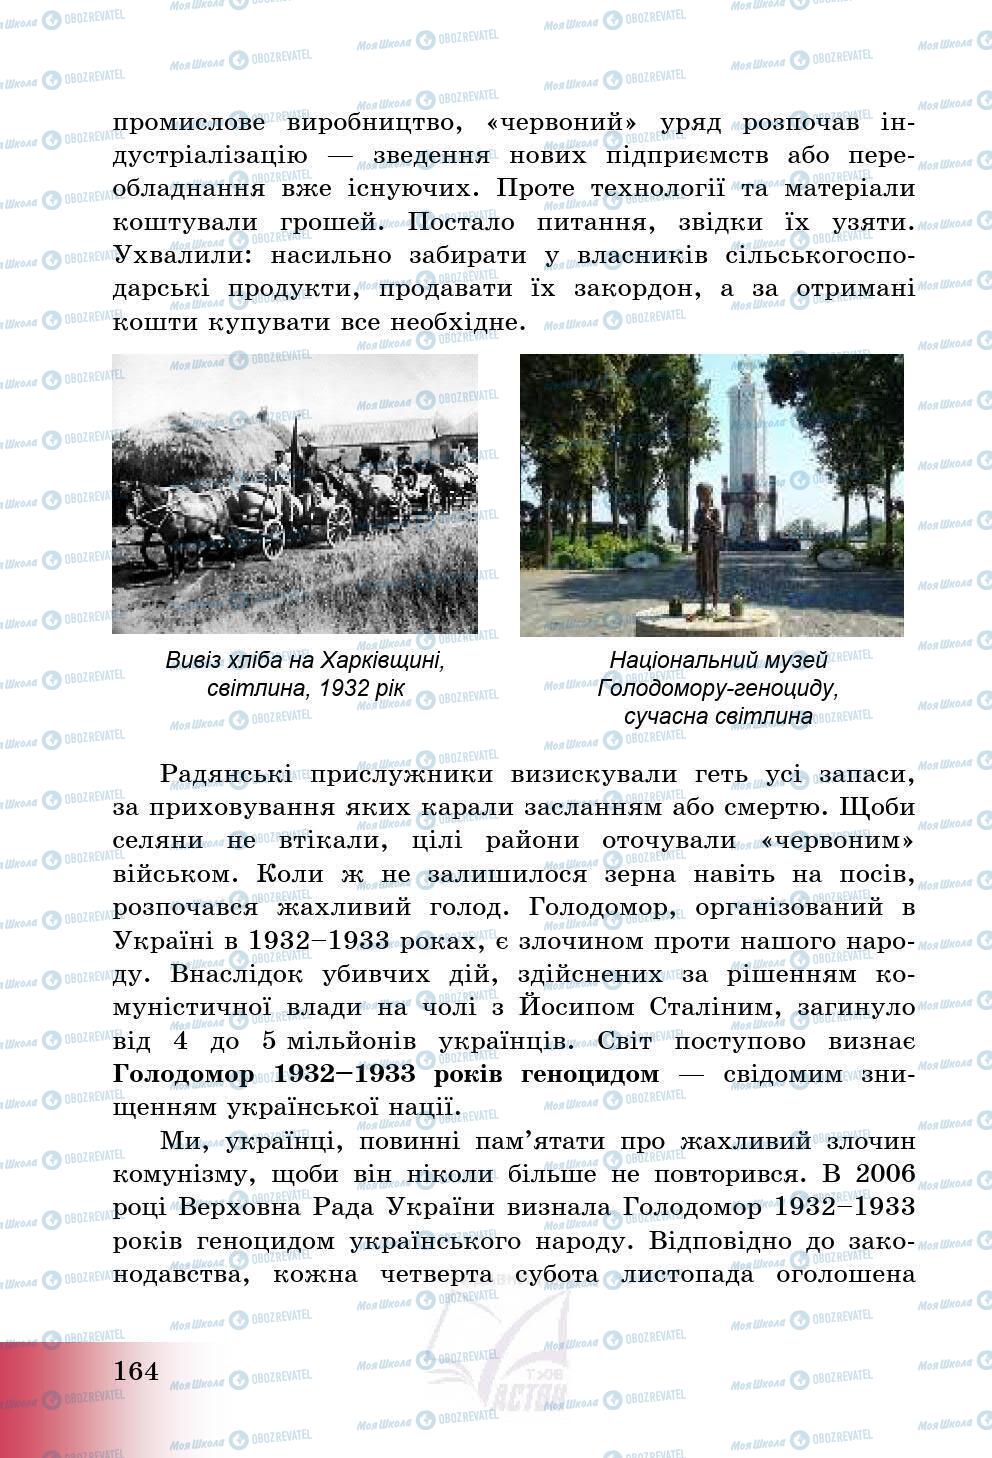 Підручники Історія України 5 клас сторінка 167